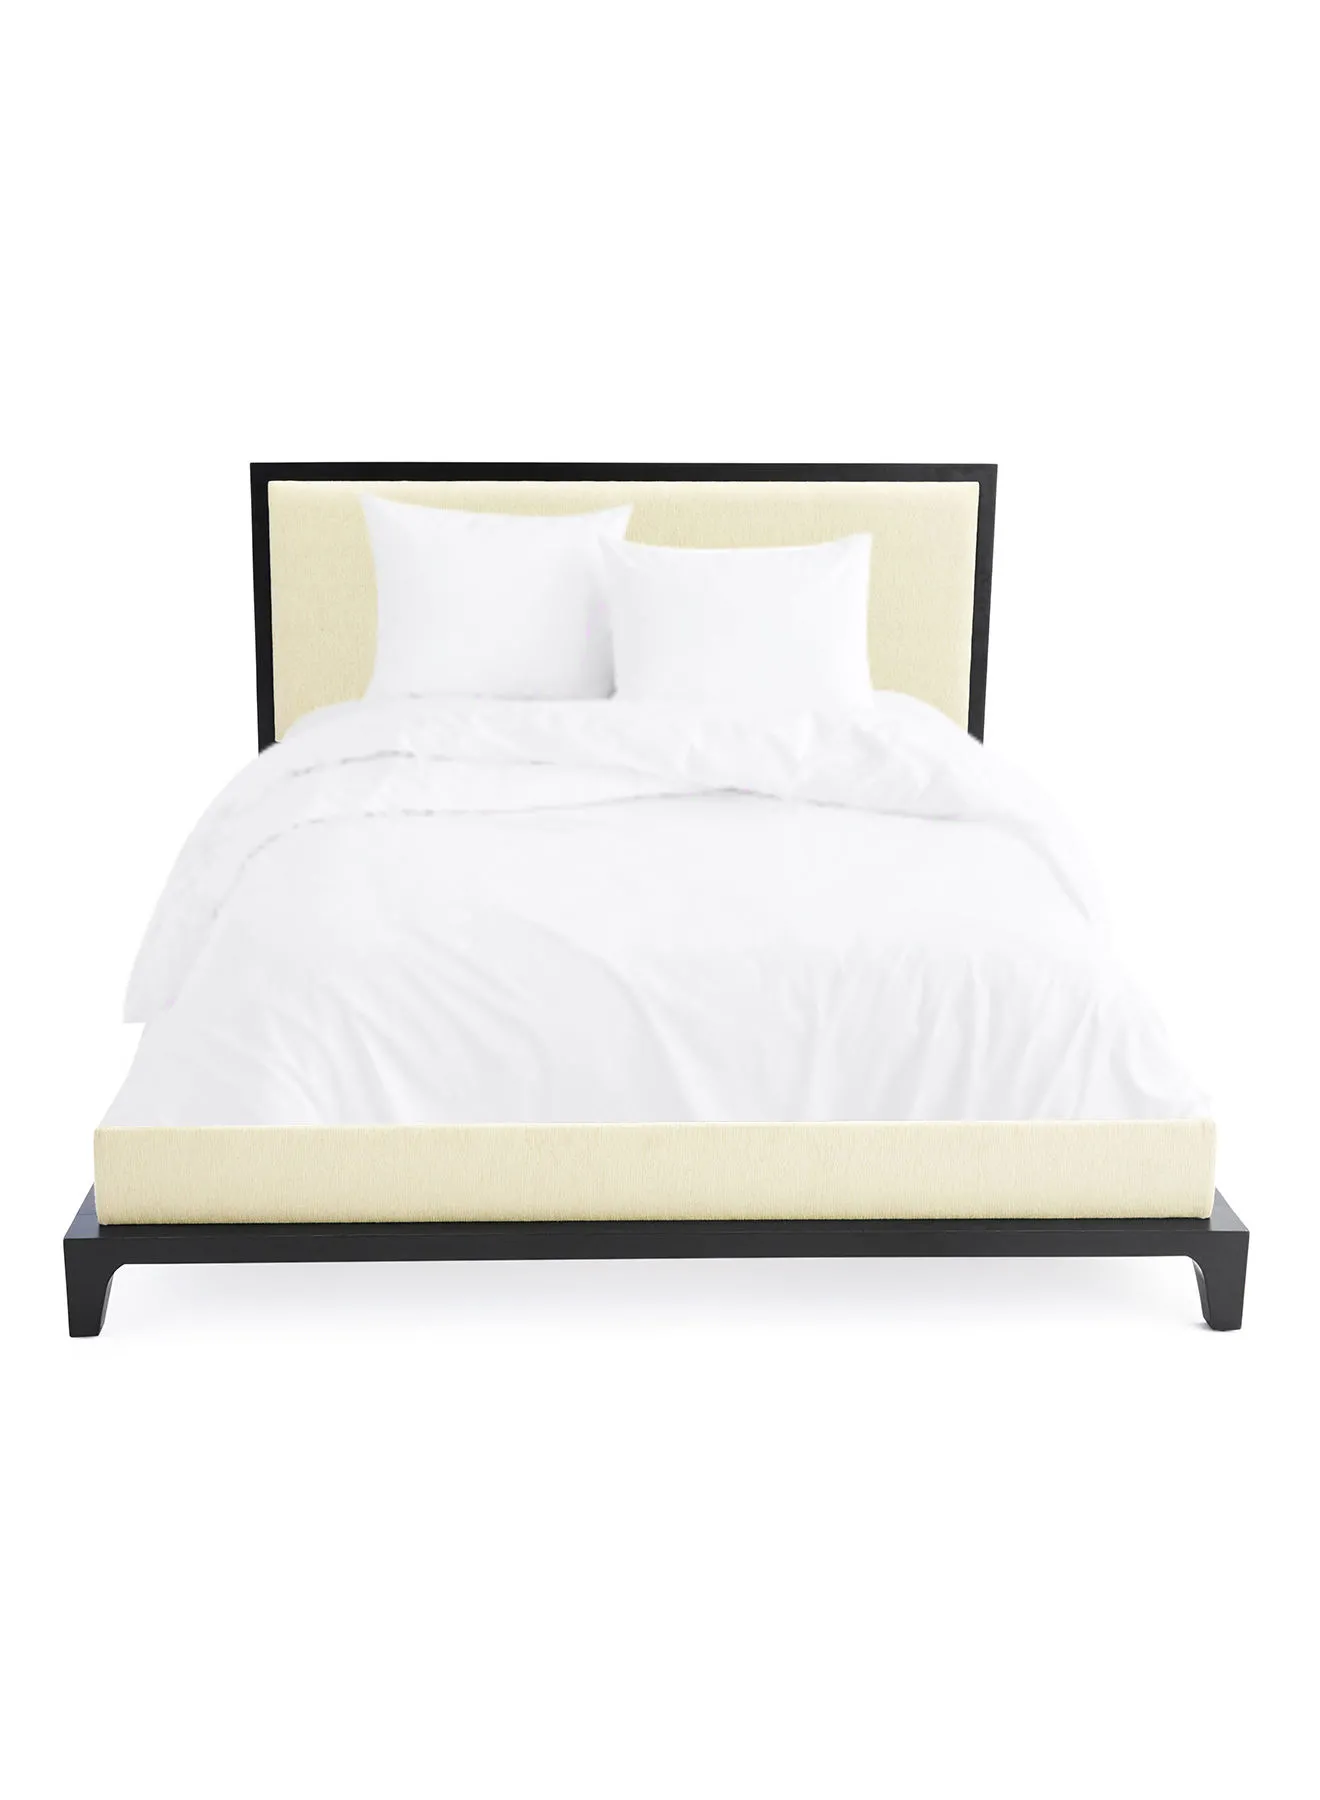 إطار سرير ebb & flow فاخر - سرير بحجم كوين - مجموعة مسمار أنيقة - لون أسود / بيج - مقاس 1660 × 2080 × 1100 - منزل فاخر